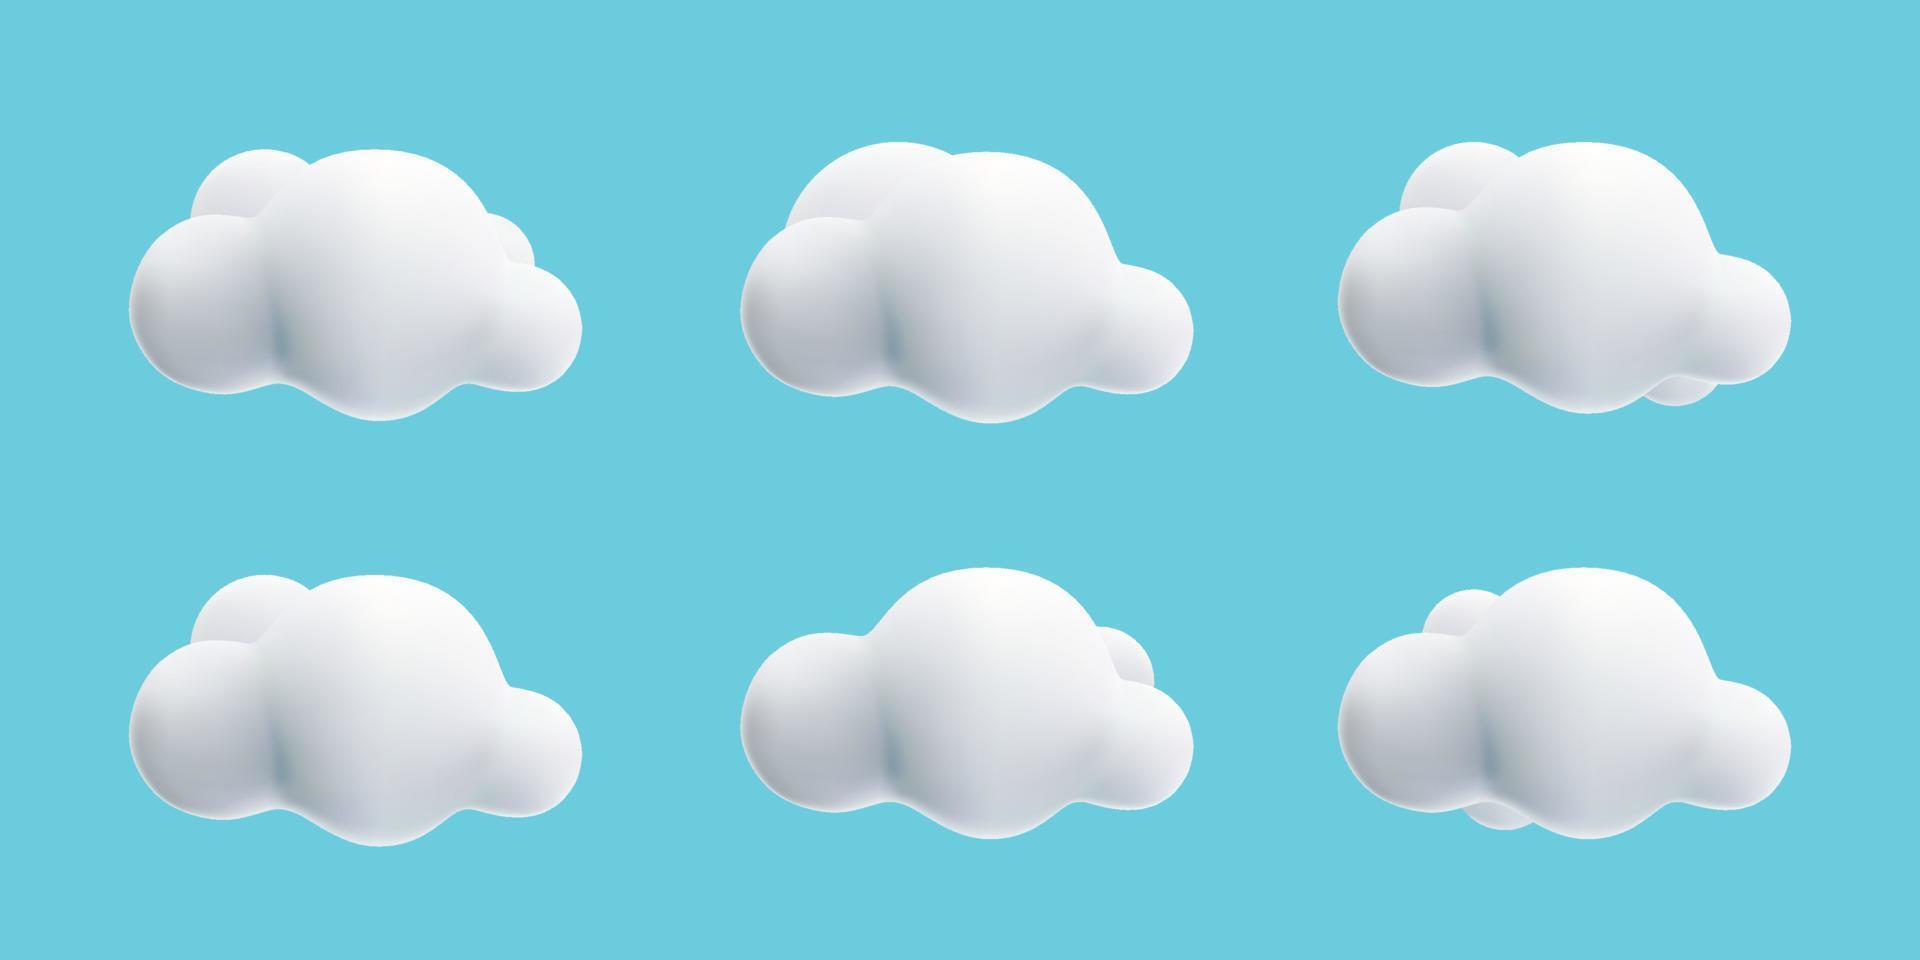 3D weiße, flauschige Wolken-Cartoon-Stilsammlung auf blauem Himmel vektor